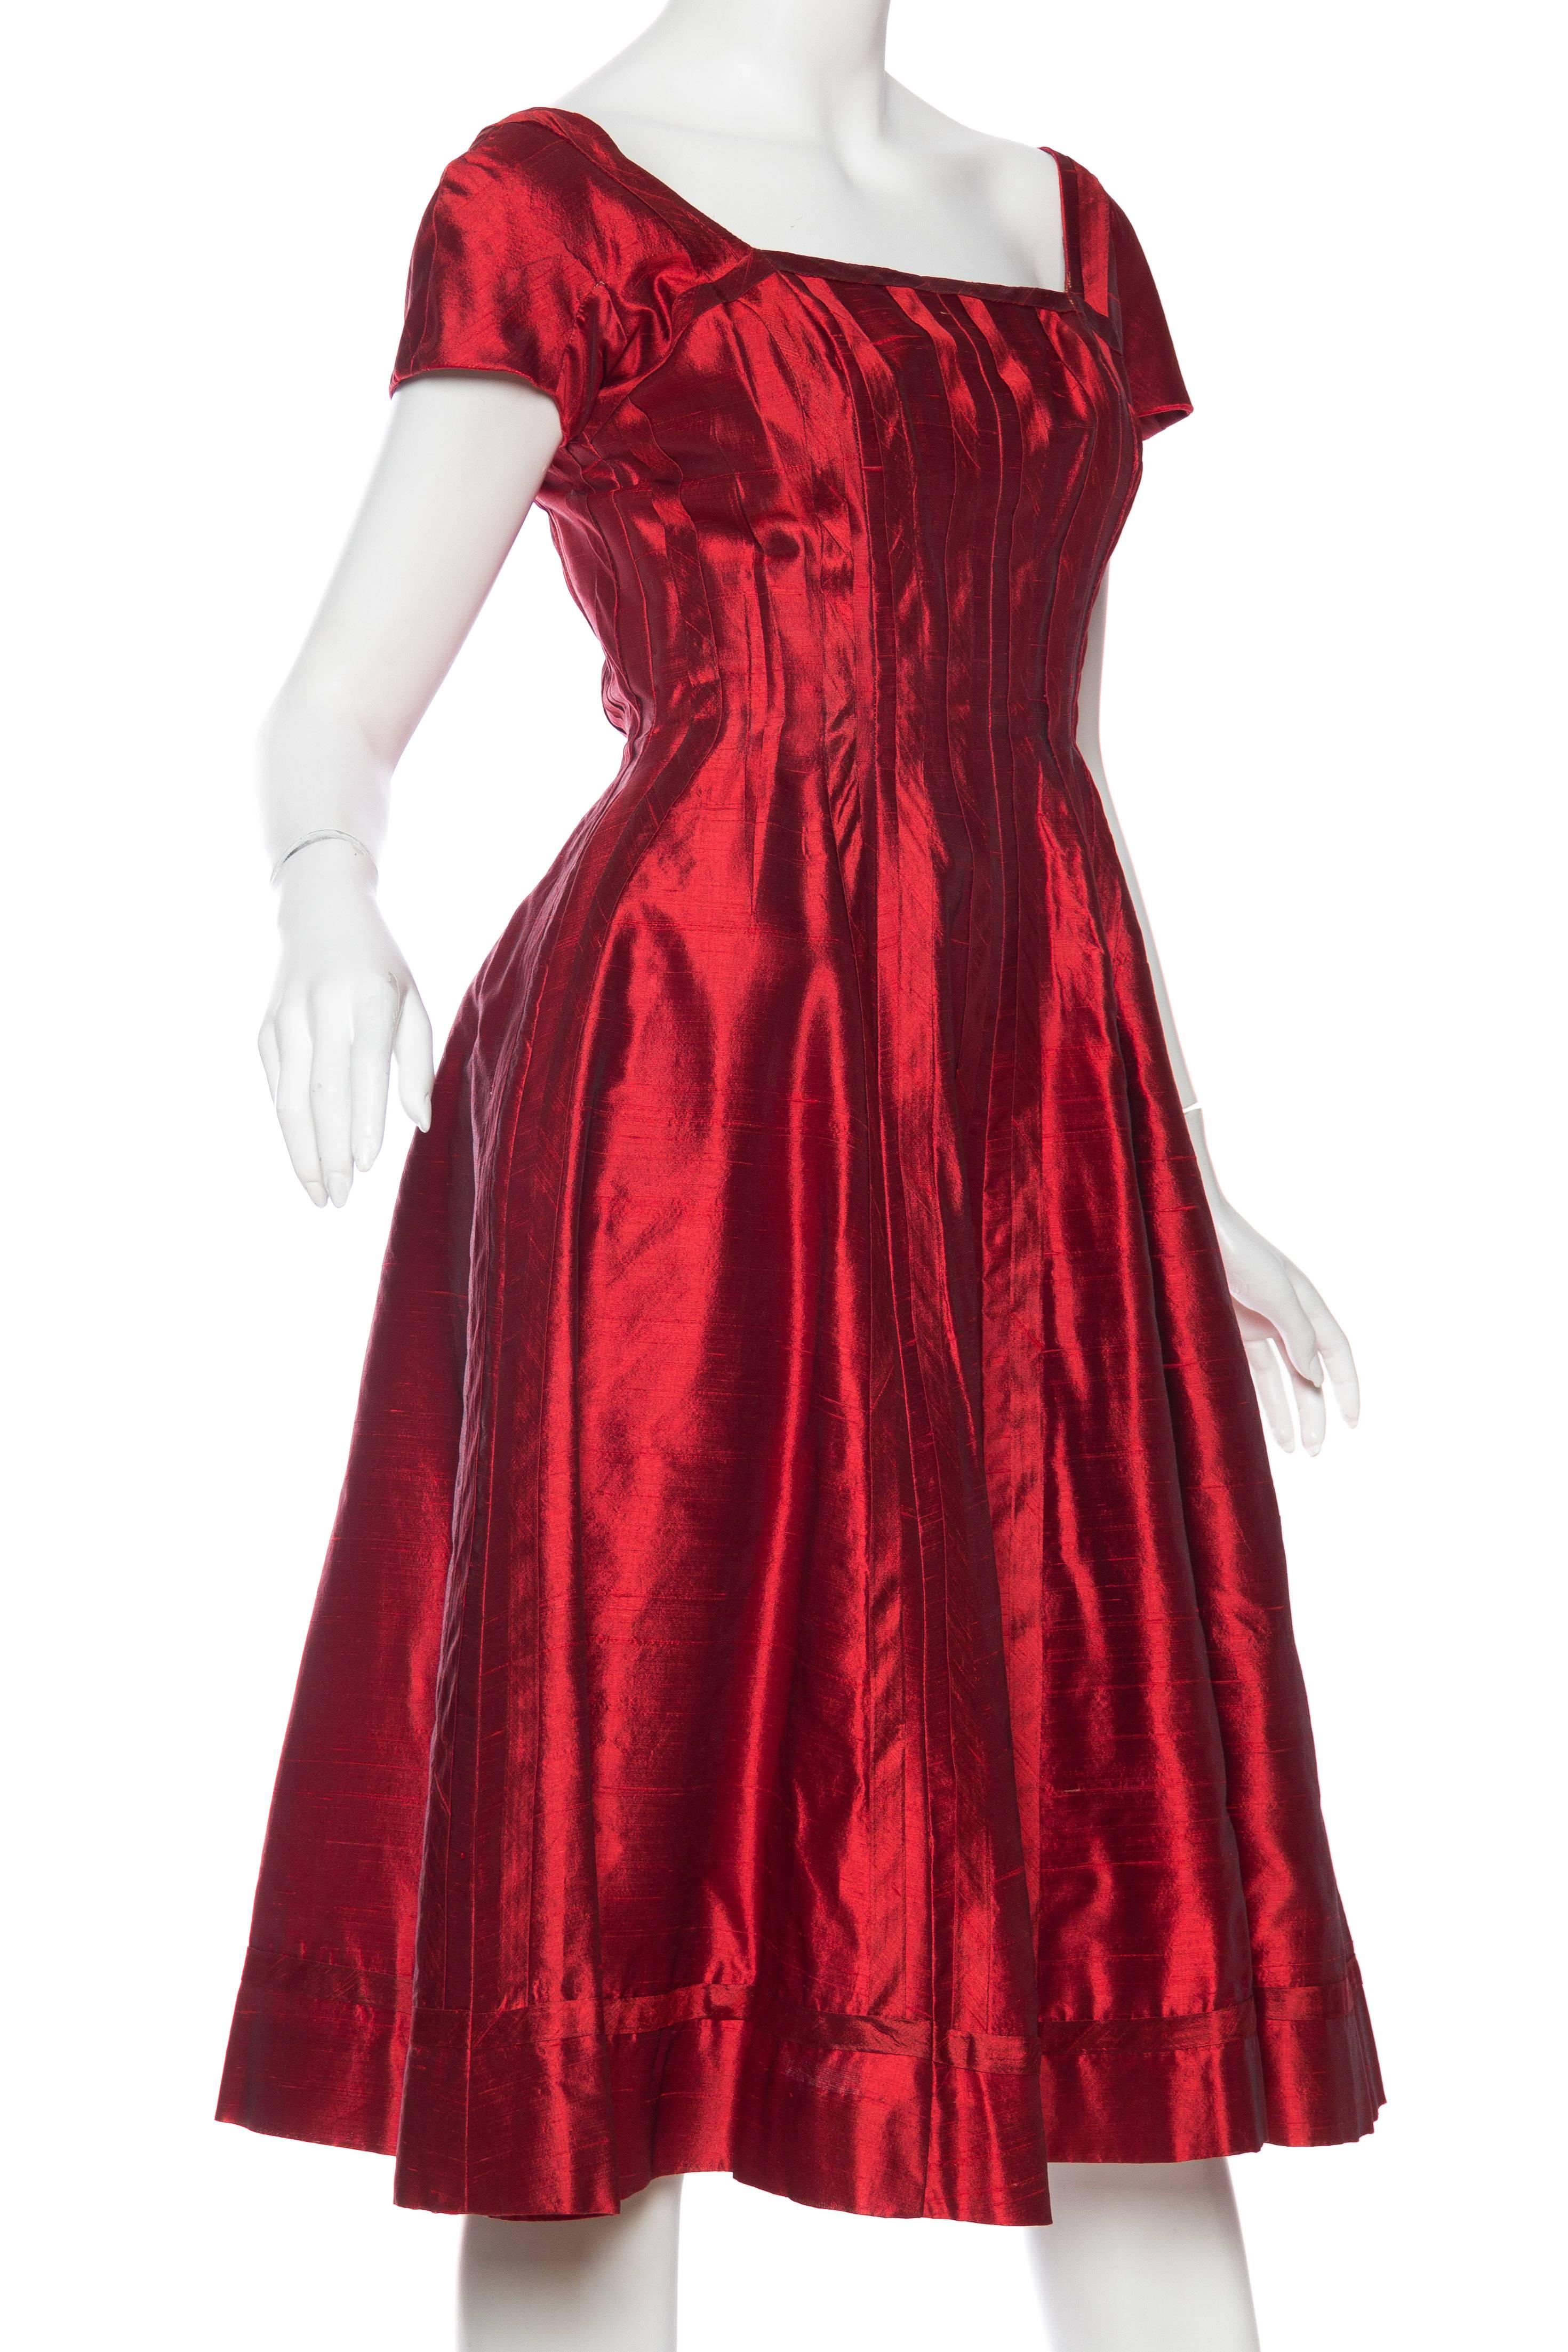 Women's 1950s Red Silk Dress